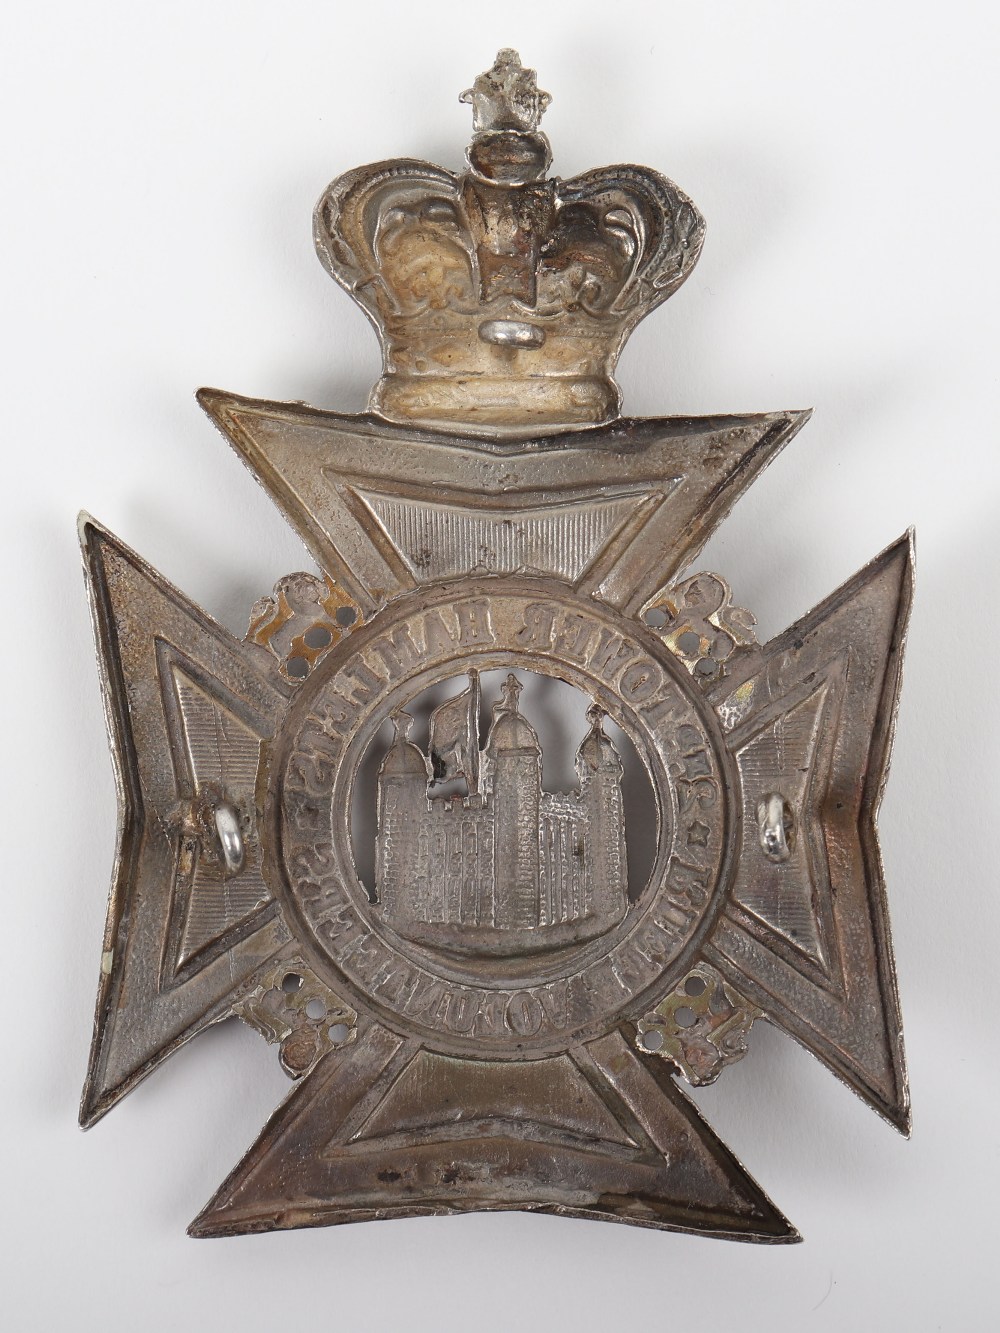 Victorian 2nd Tower Hamlets Rifle Volunteers Officers Helmet Plate - Image 2 of 2